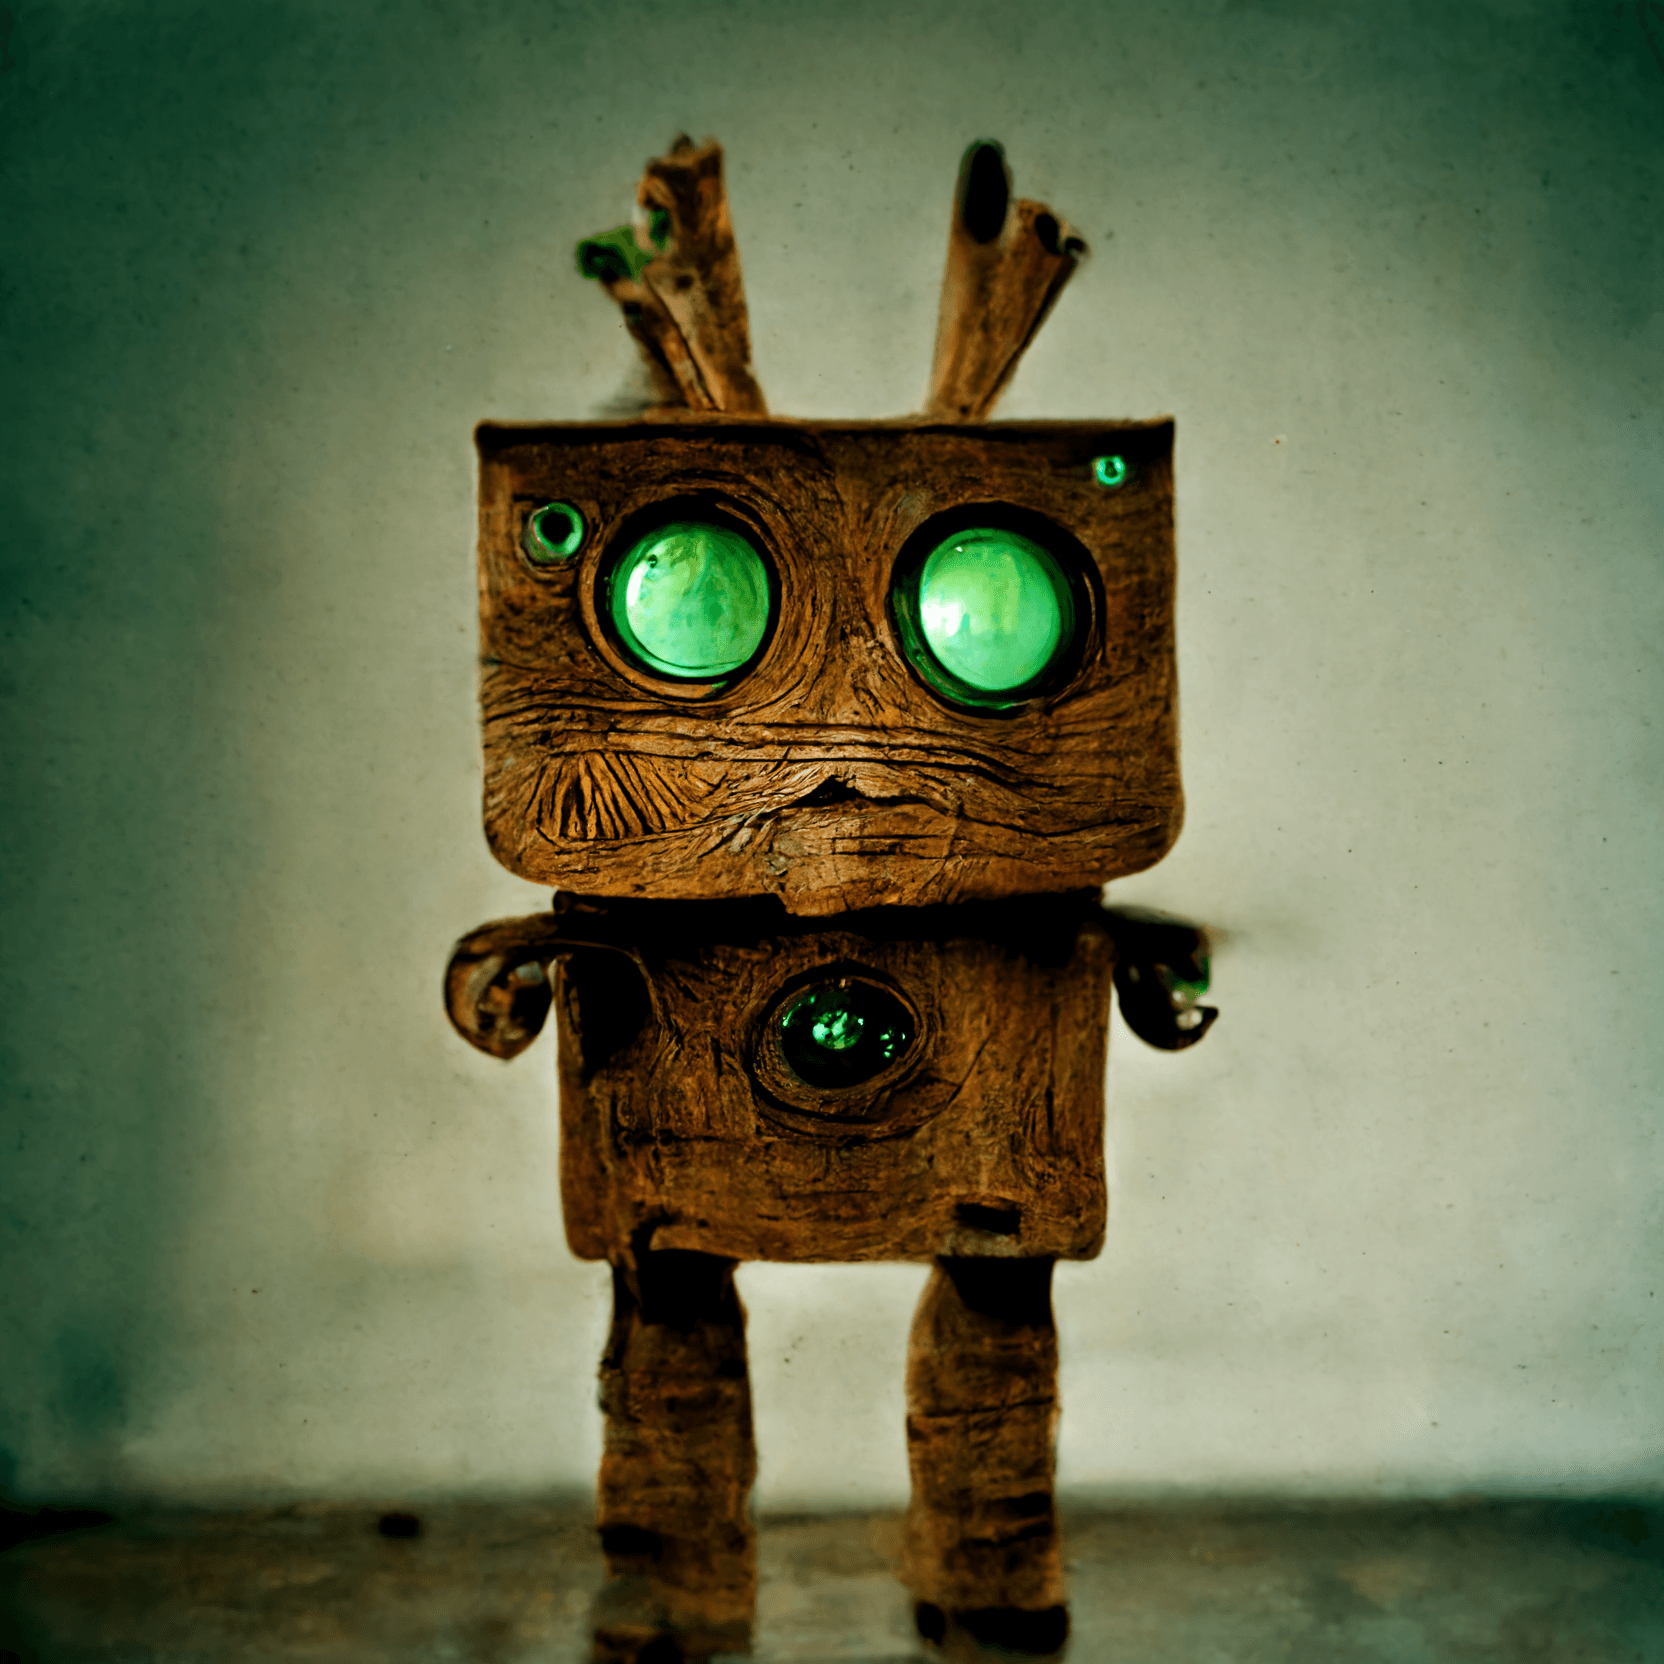 Wooden robot "Drew"